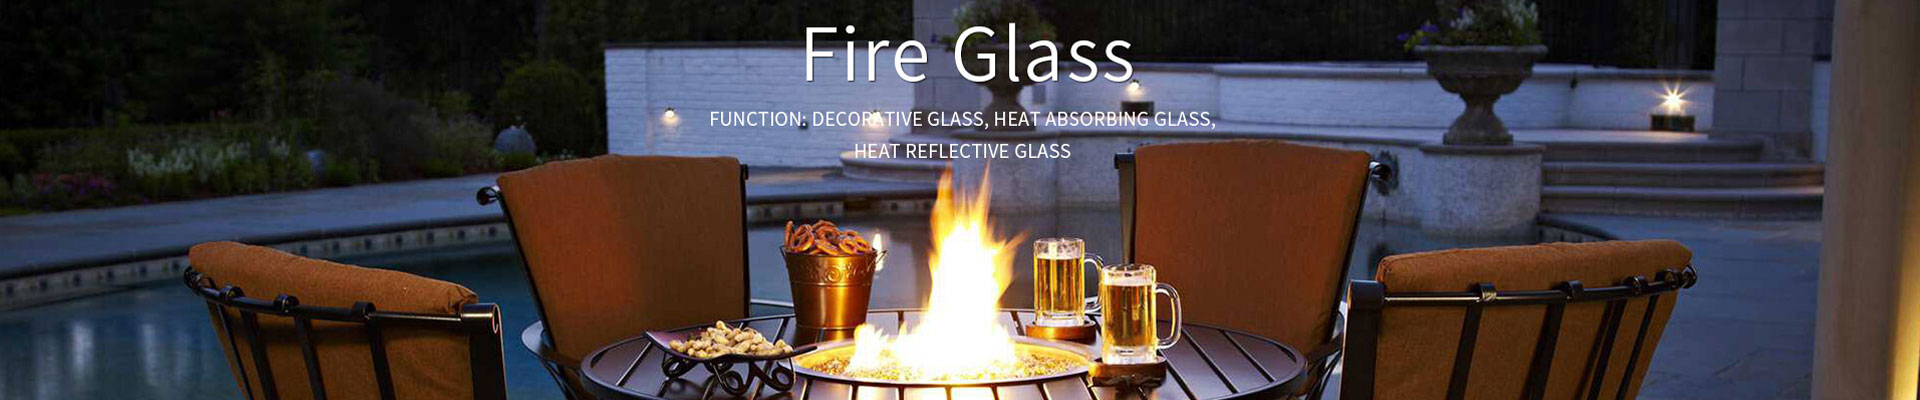 Fire Glass